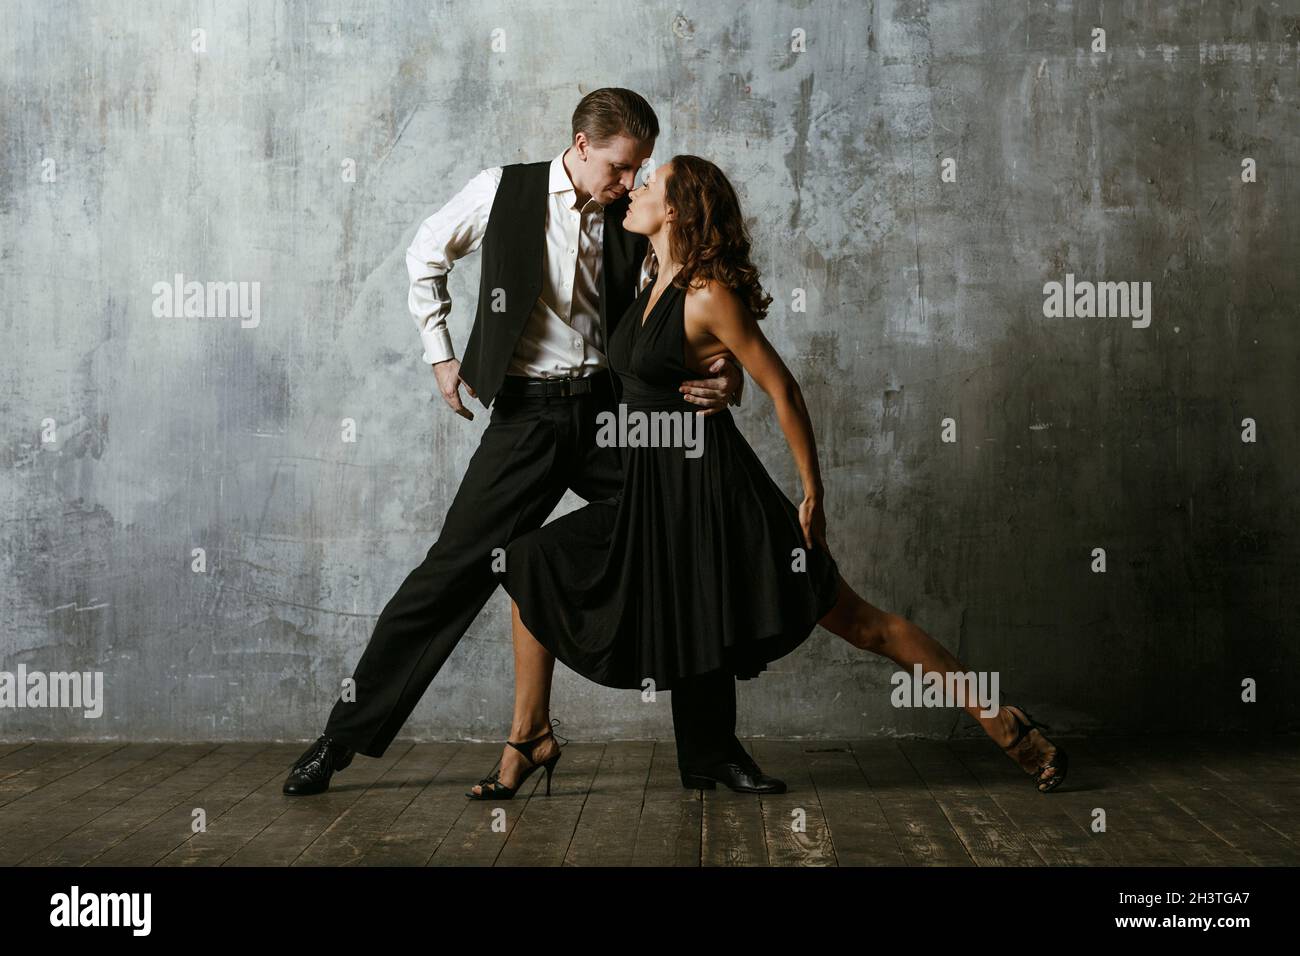 Homme et femme danseuses en noir danse tango Banque D'Images